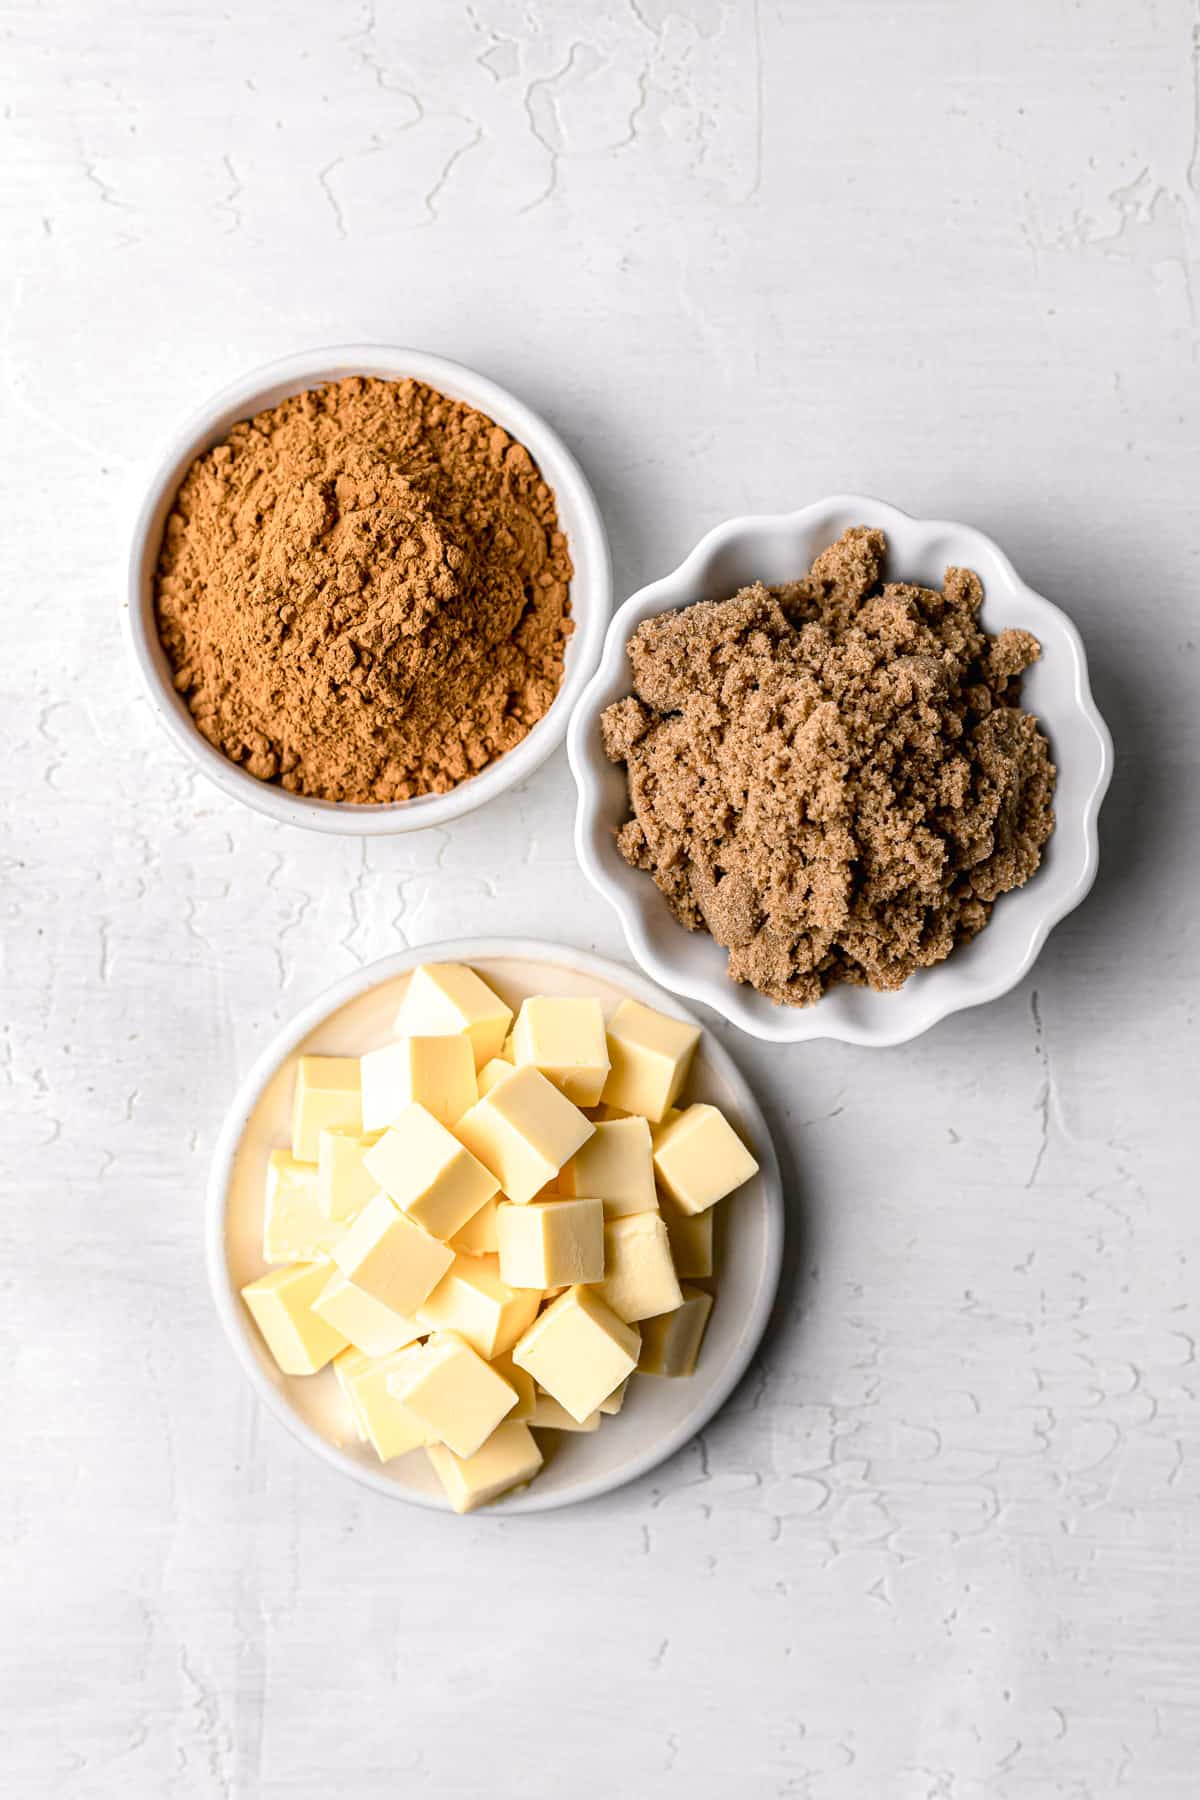 ingredients for cinnamon sugar filling.